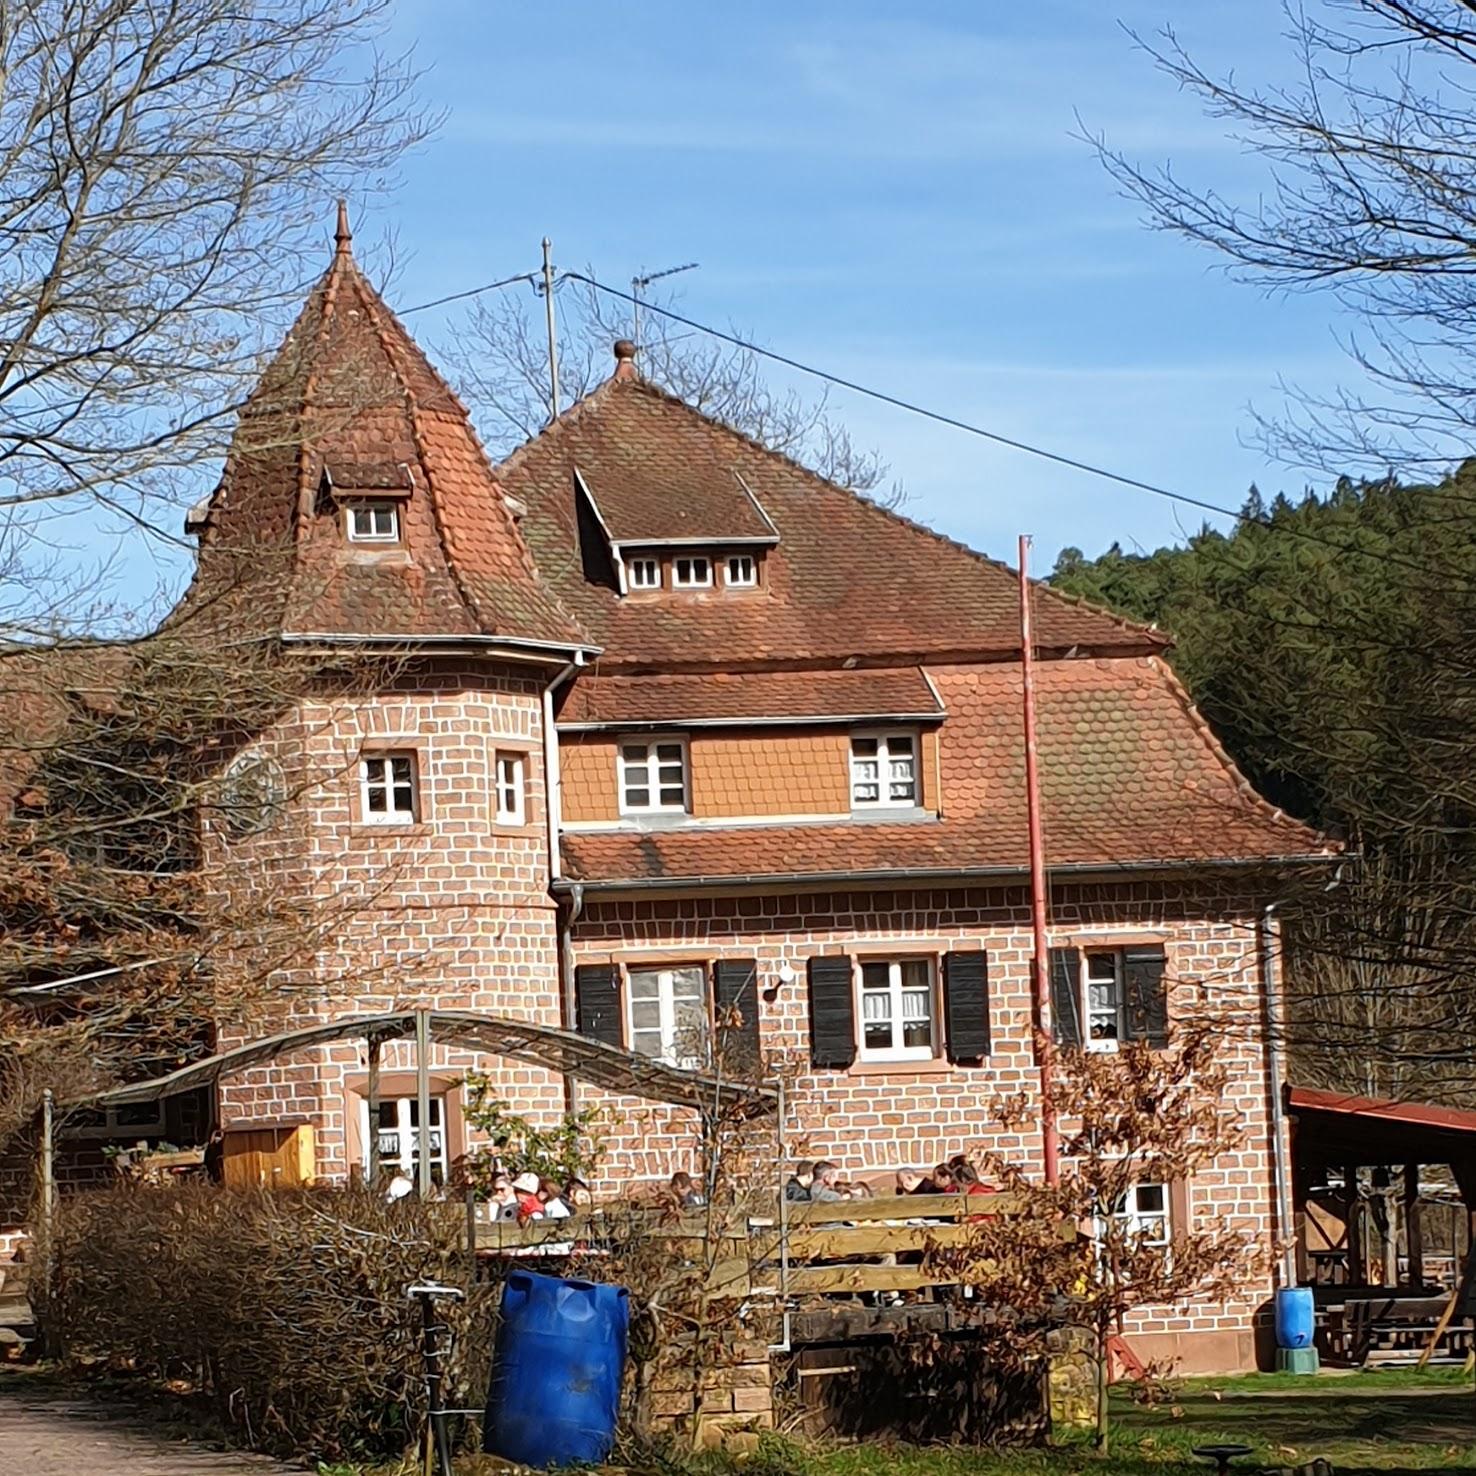 Restaurant "Naturfreundehaus" in Elmstein